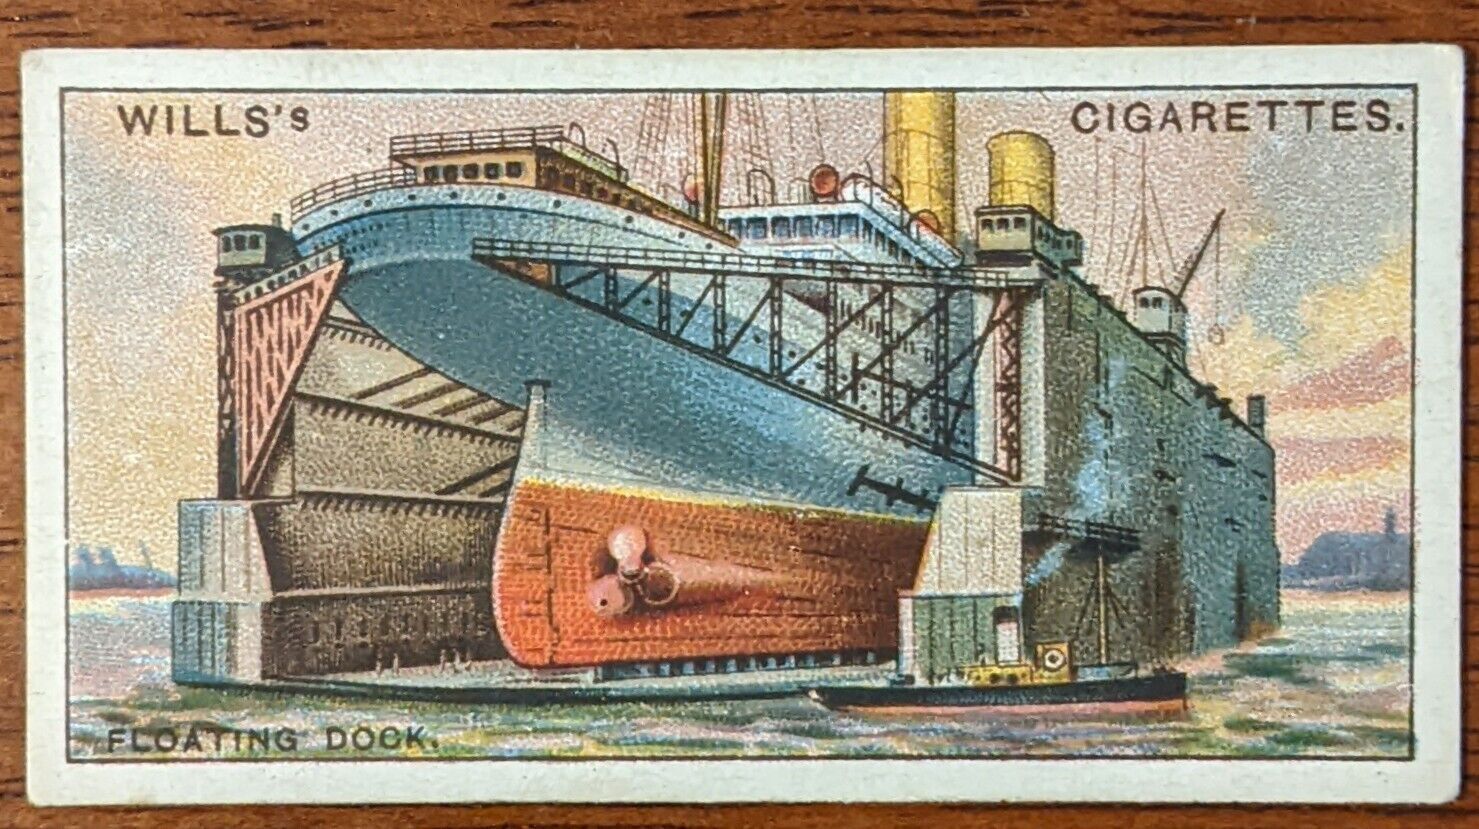 1927 Wills Cigarette Card Engineering Wonders No.38 Floating Dock Great Britain.